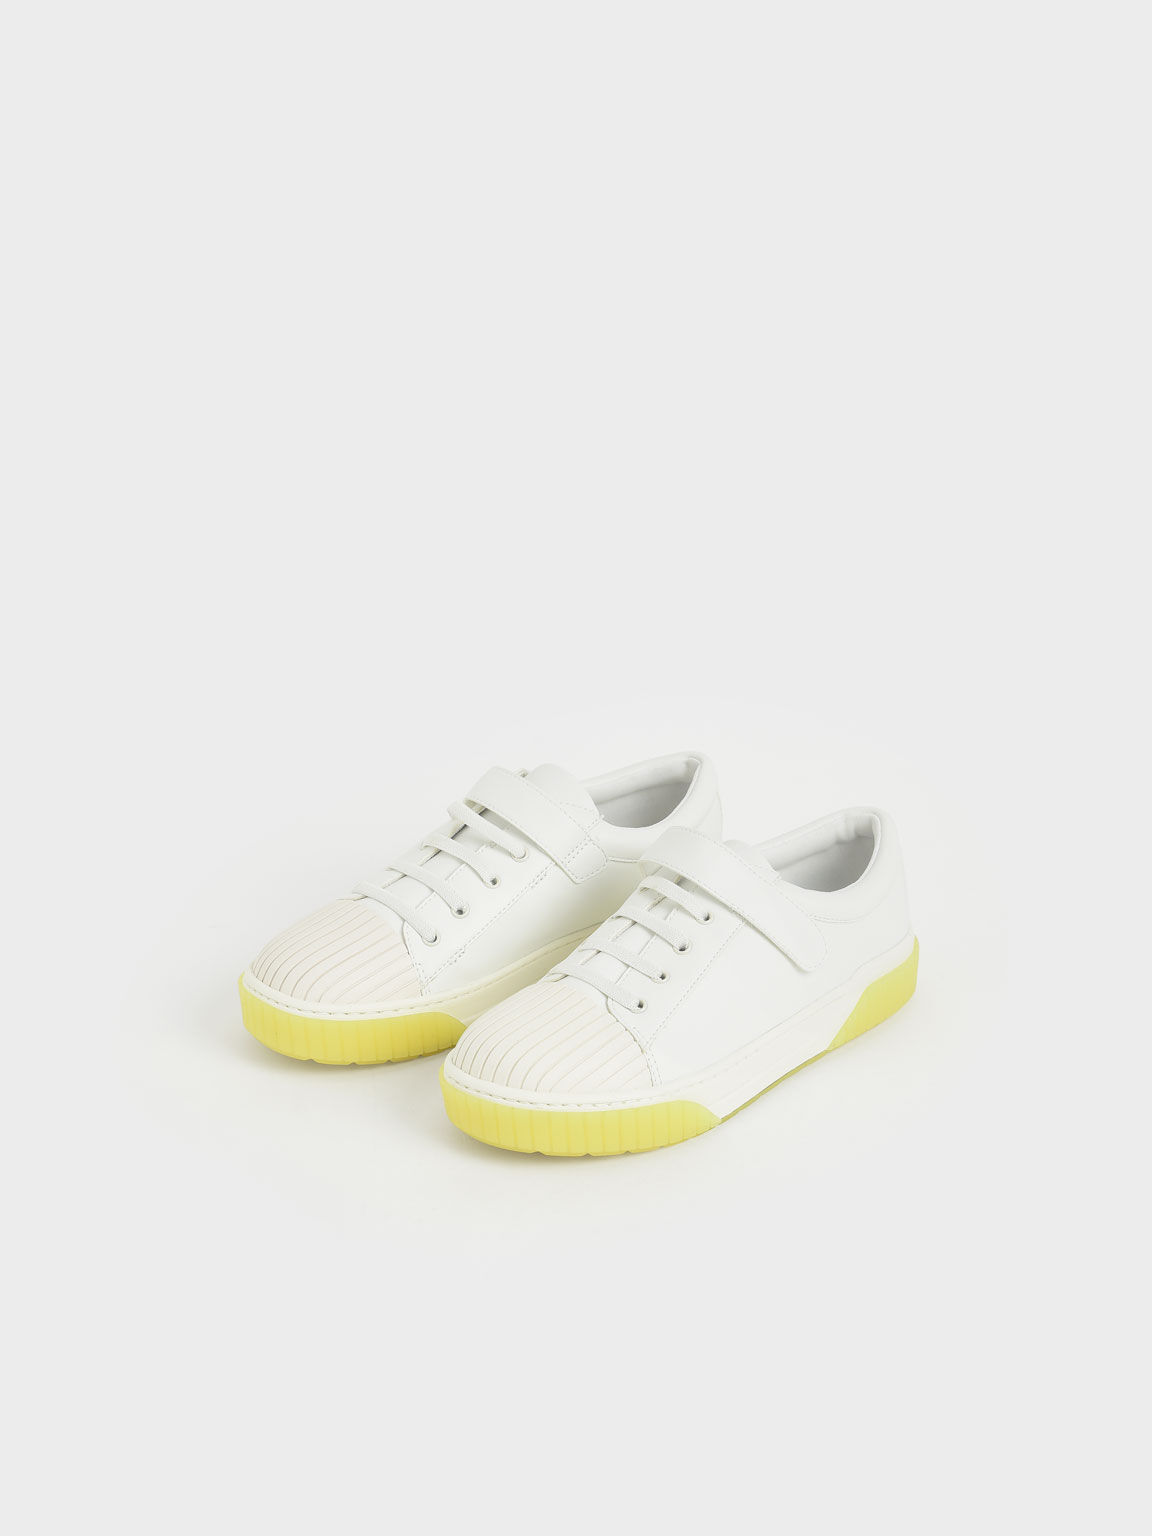 Sepatu Girls'Tweed Platform, White, hi-res